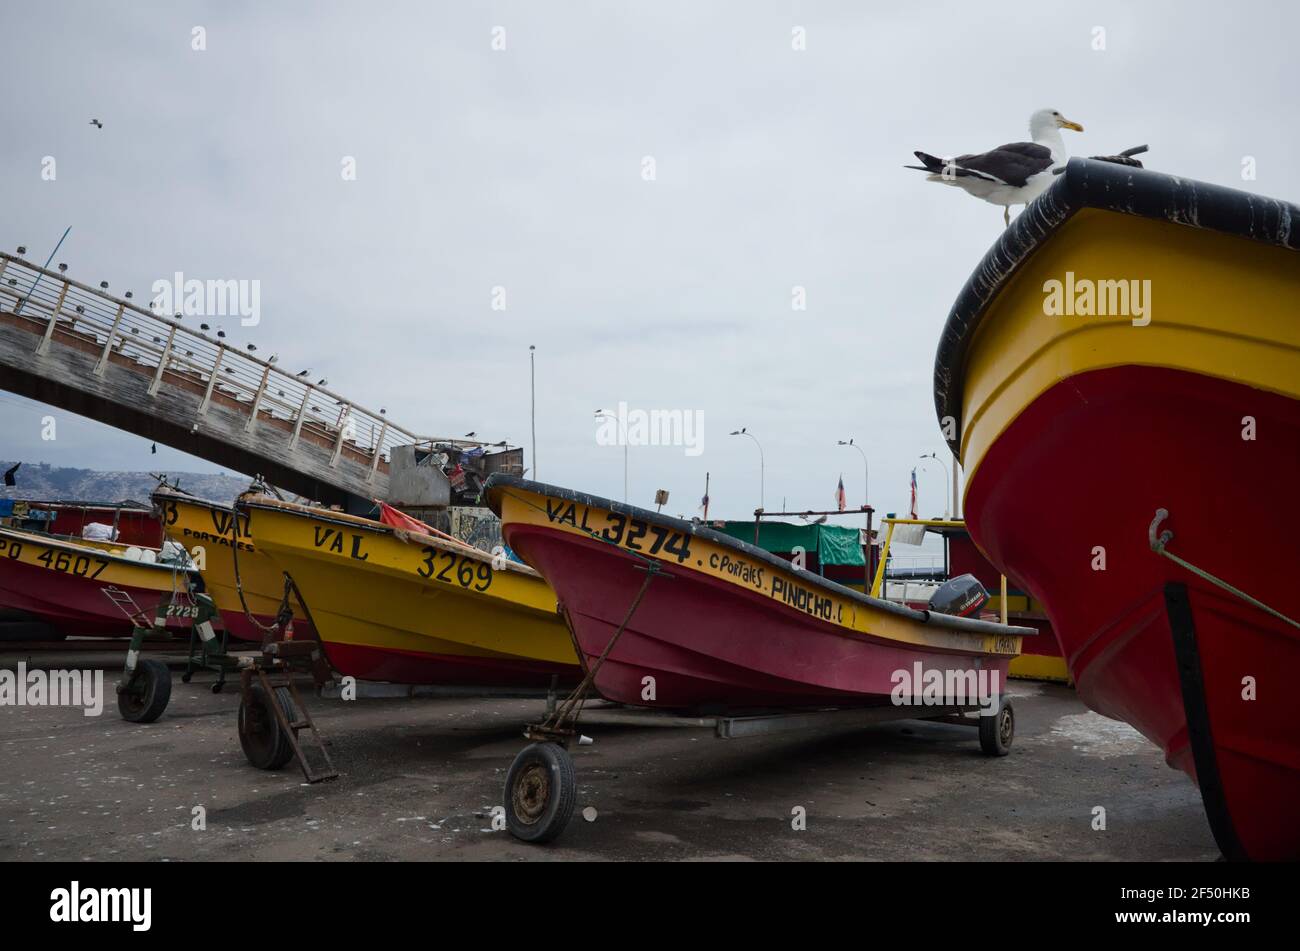 Valparaiso, Chili - février 2020 : bateaux à moteur de pêche debout sur des voitures dans le port. Seagull est assis sur l'arc du bateau. Bateaux à moteur sur le parking Banque D'Images